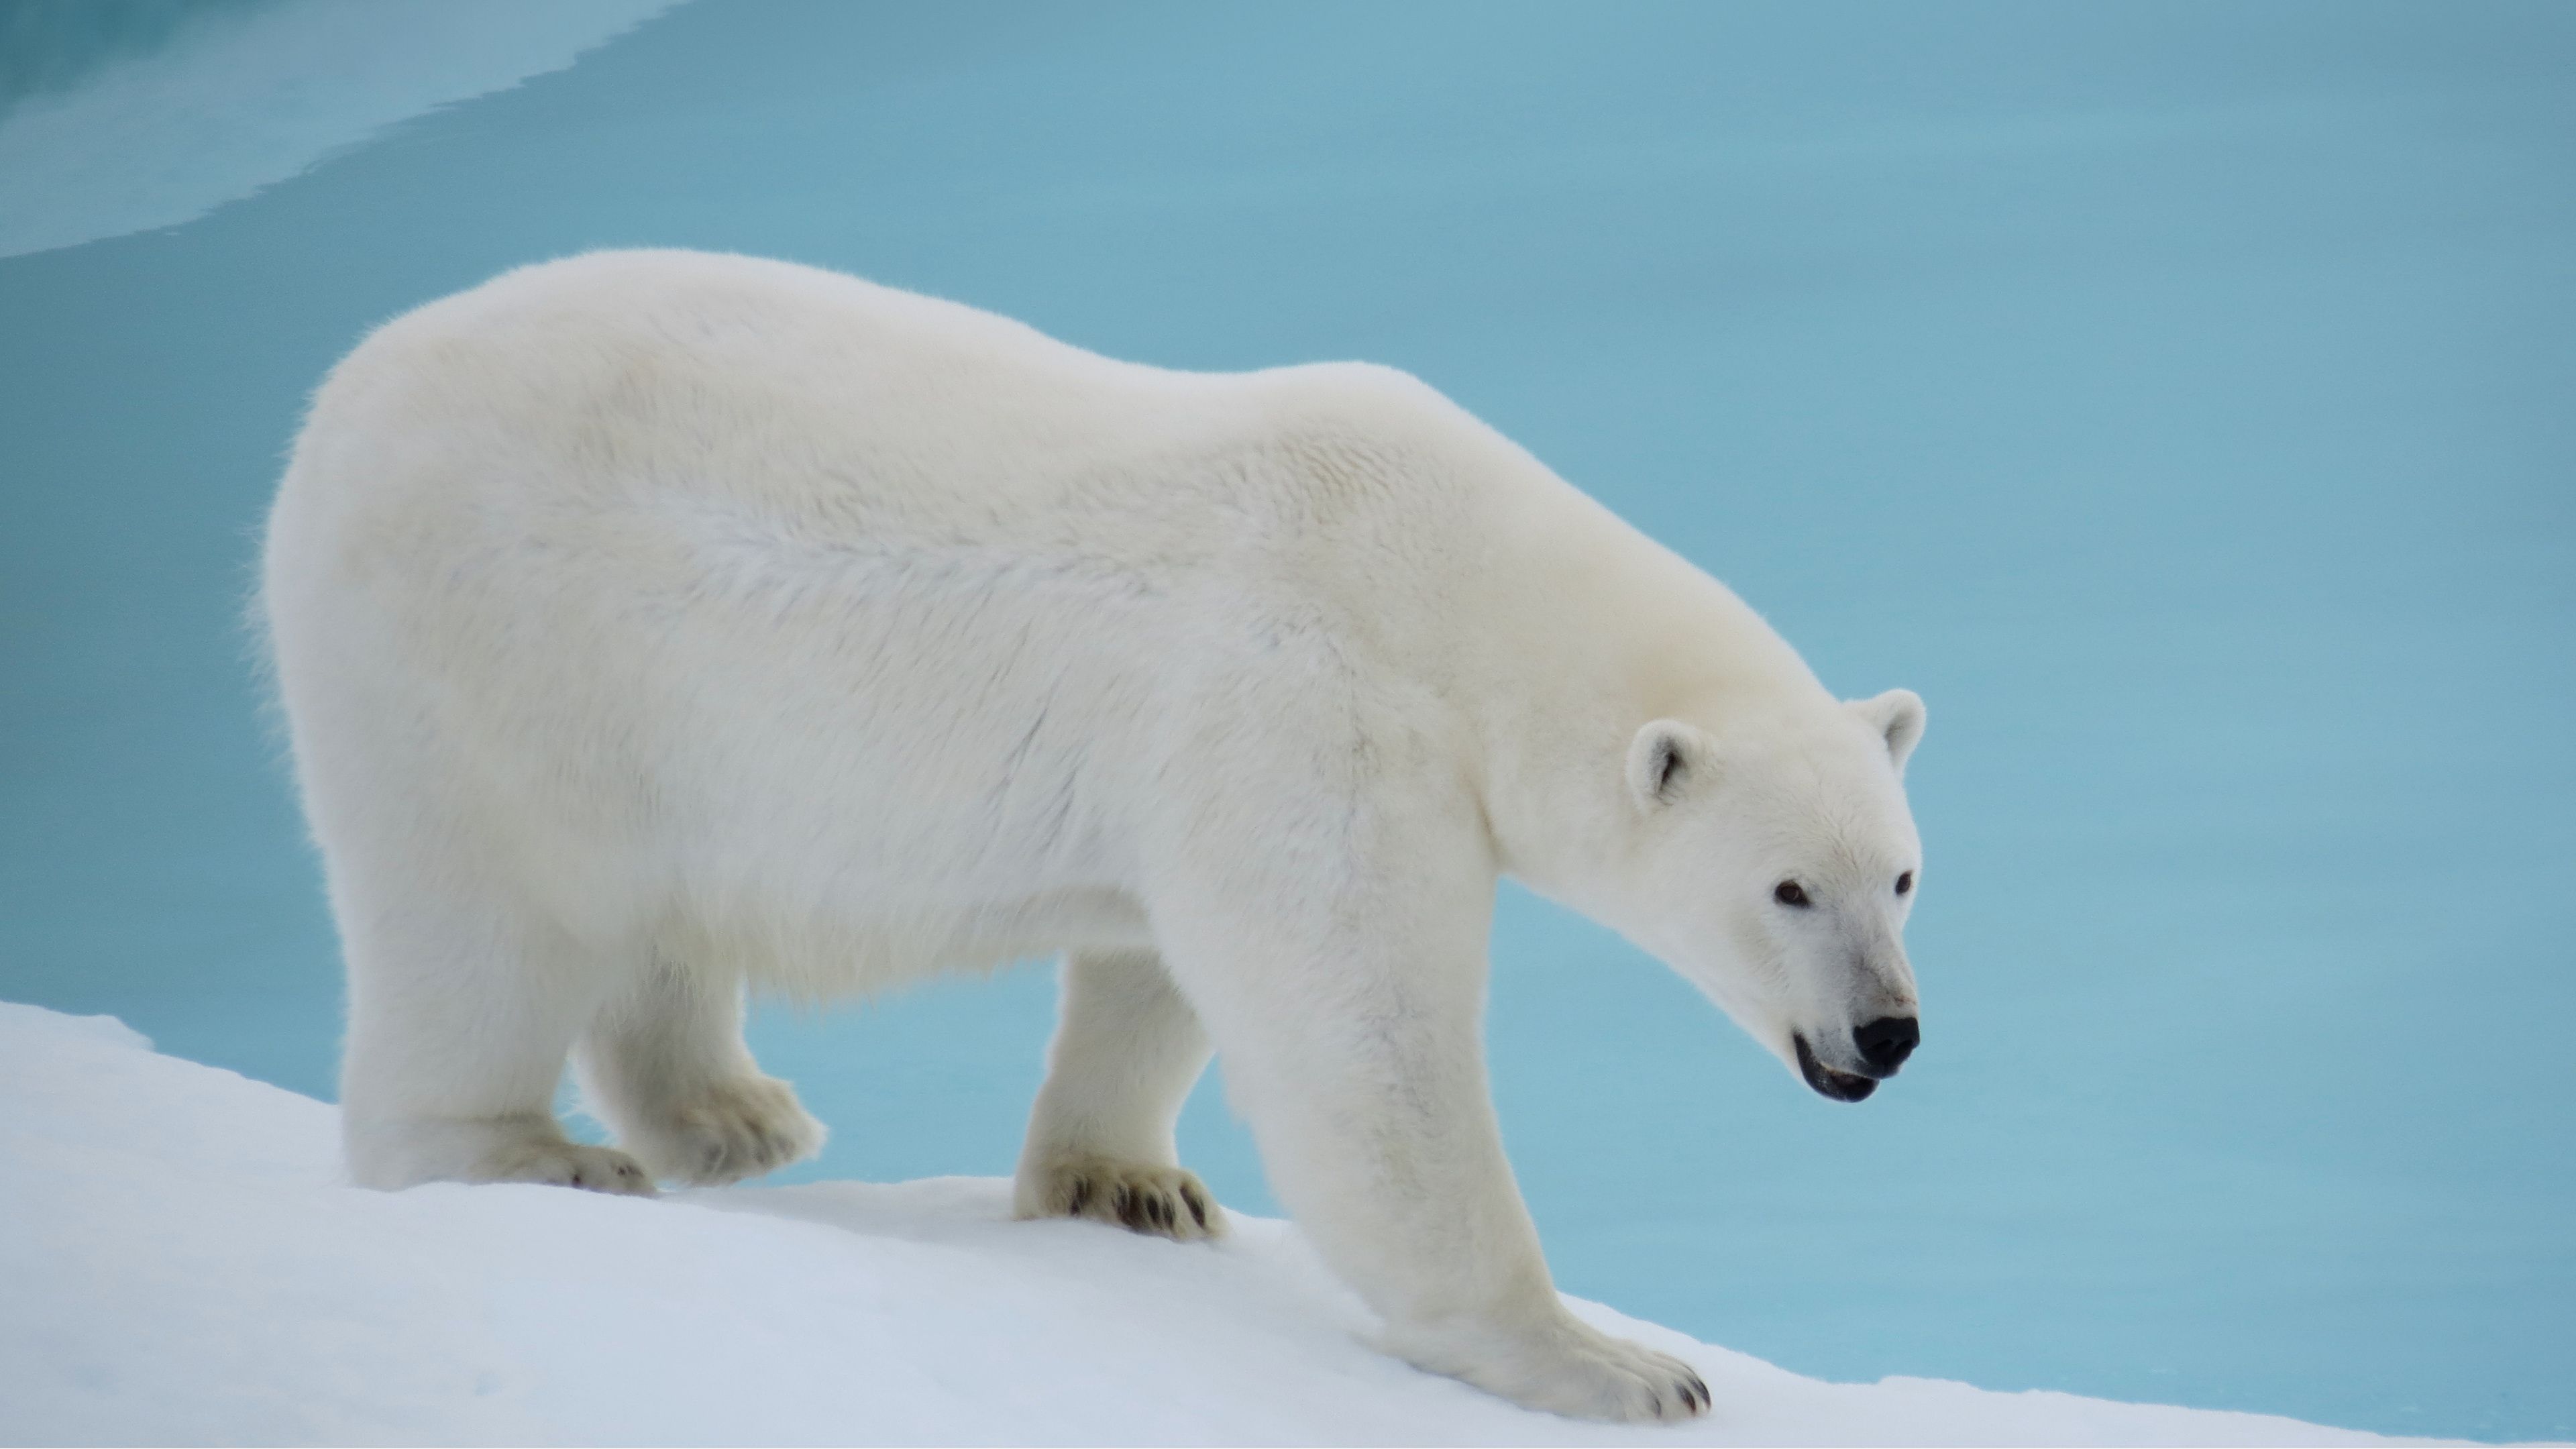 باکیفیت ترین عکس خرس قطبی واقعی با تم رنگی آبی و سفید